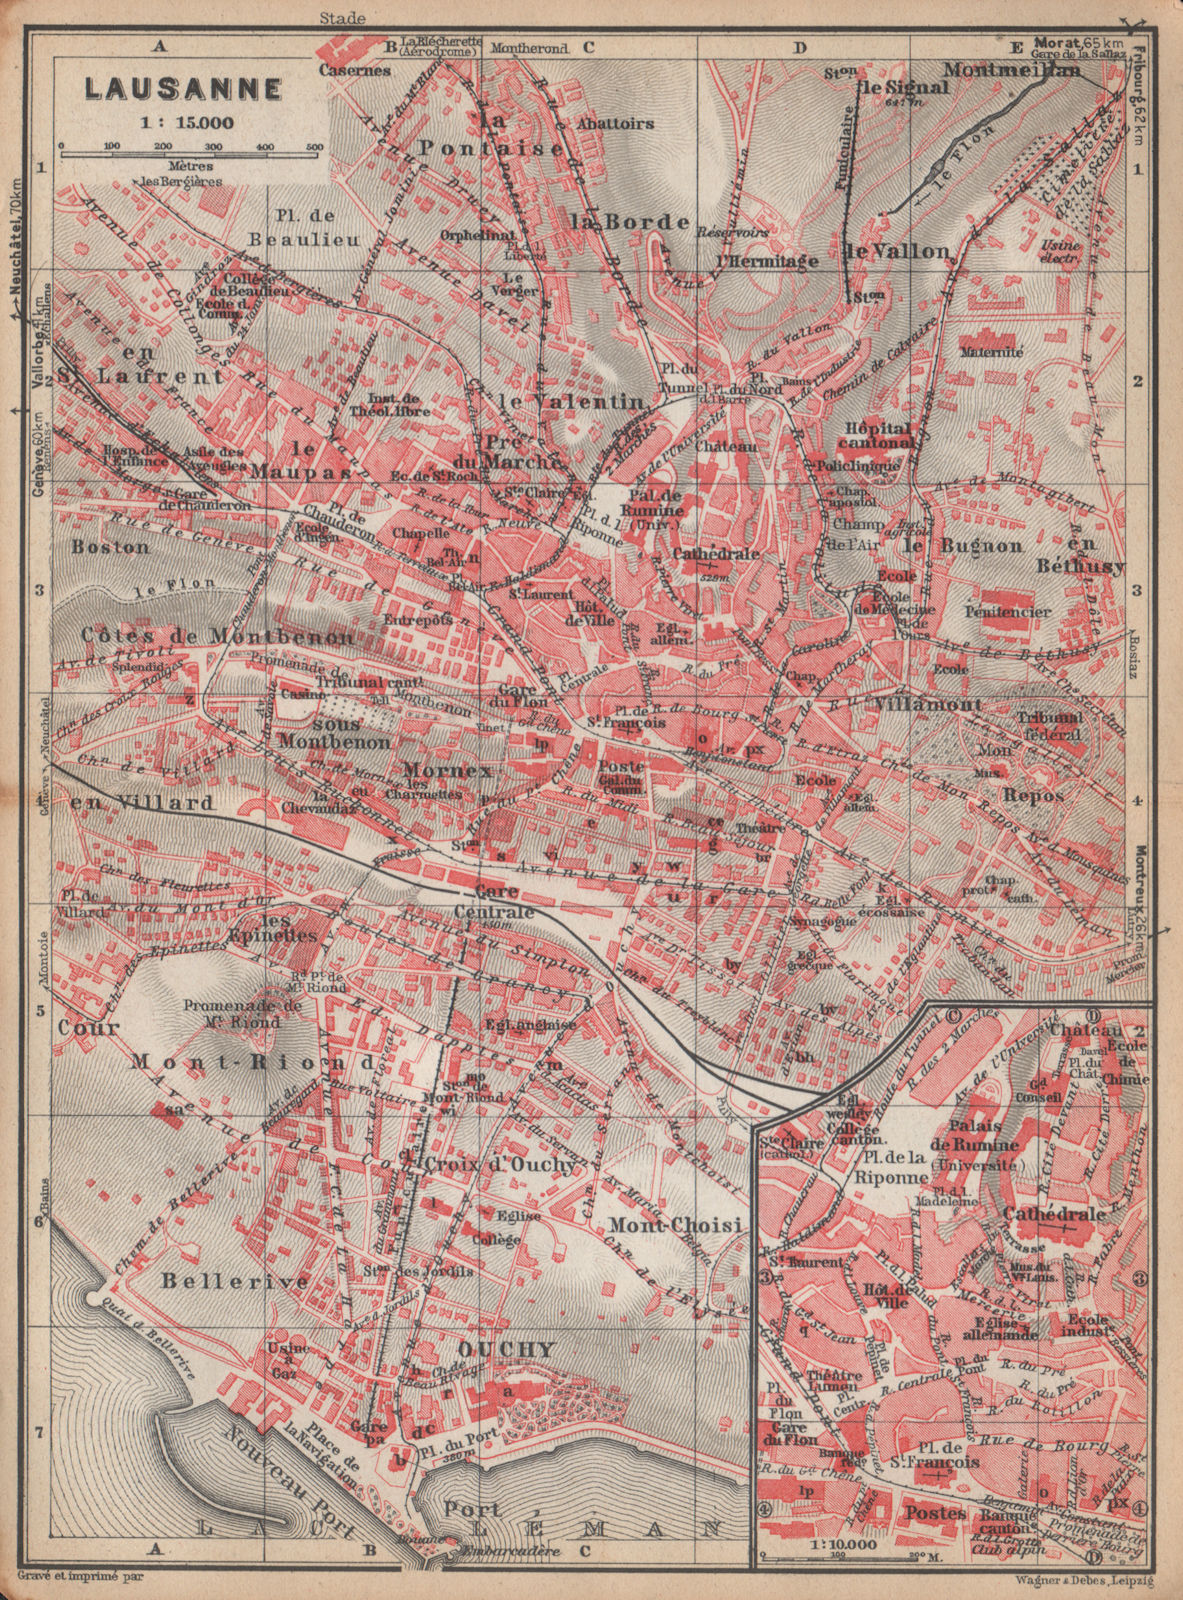 LAUSANNE. town city stadtplan. Switzerland Suisse Schweiz carte karte 1938 map